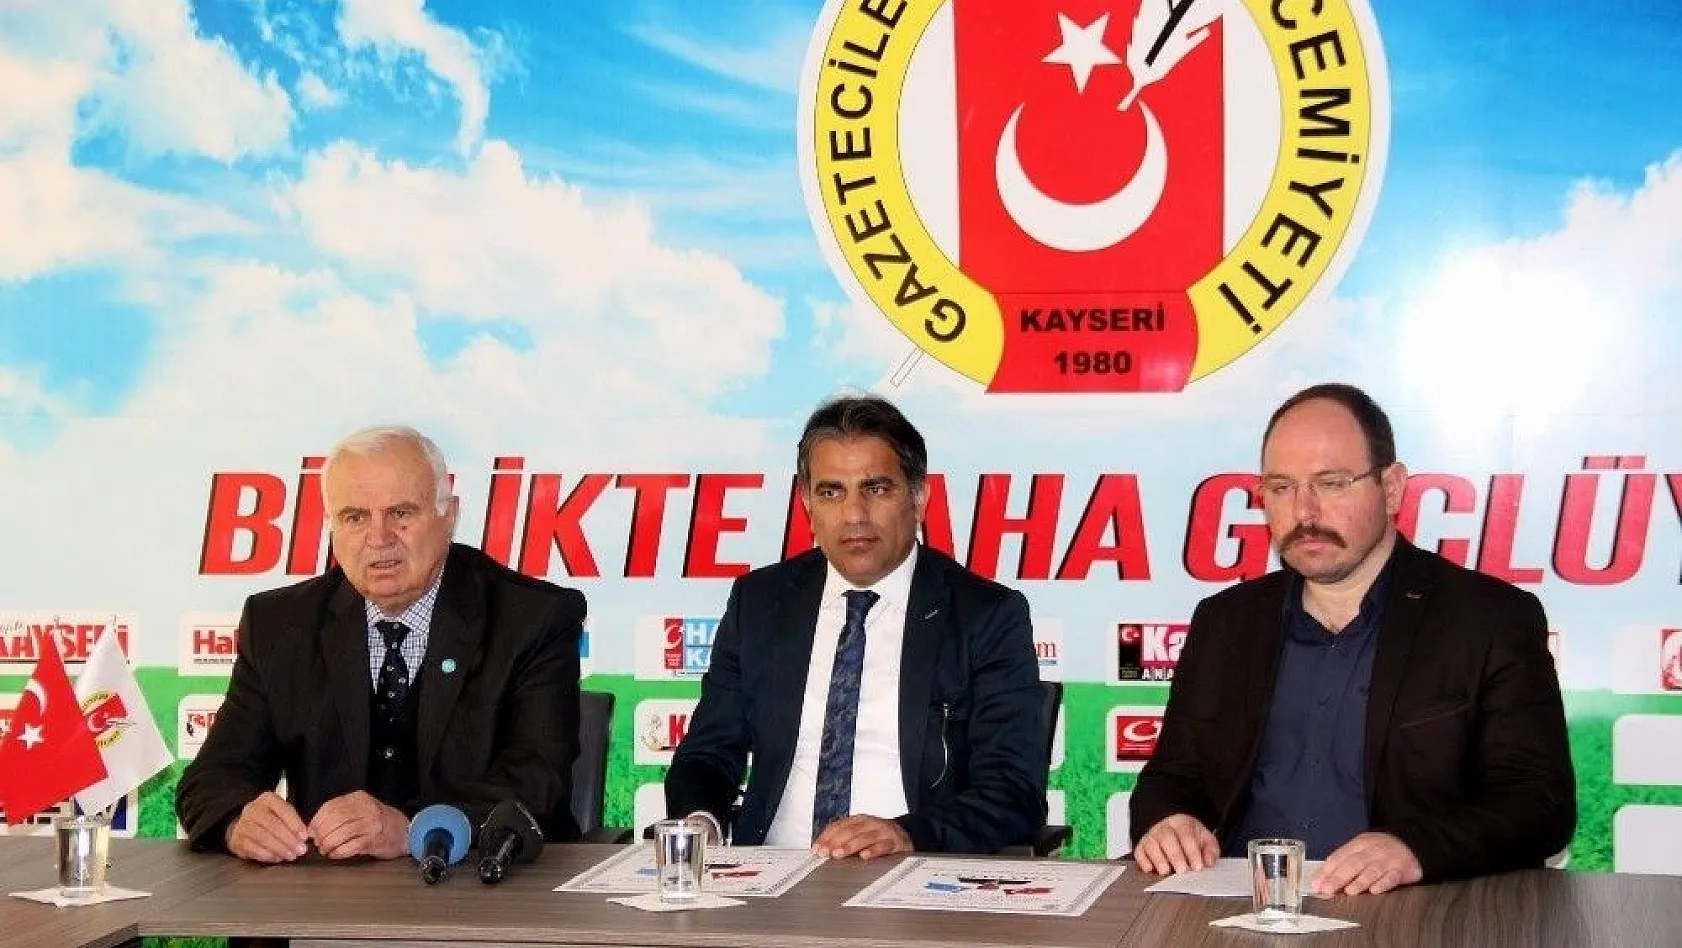 Kayseri'deki Doğu Türkistanlıların duayen ismi Mehmet Cantürk anılacak
